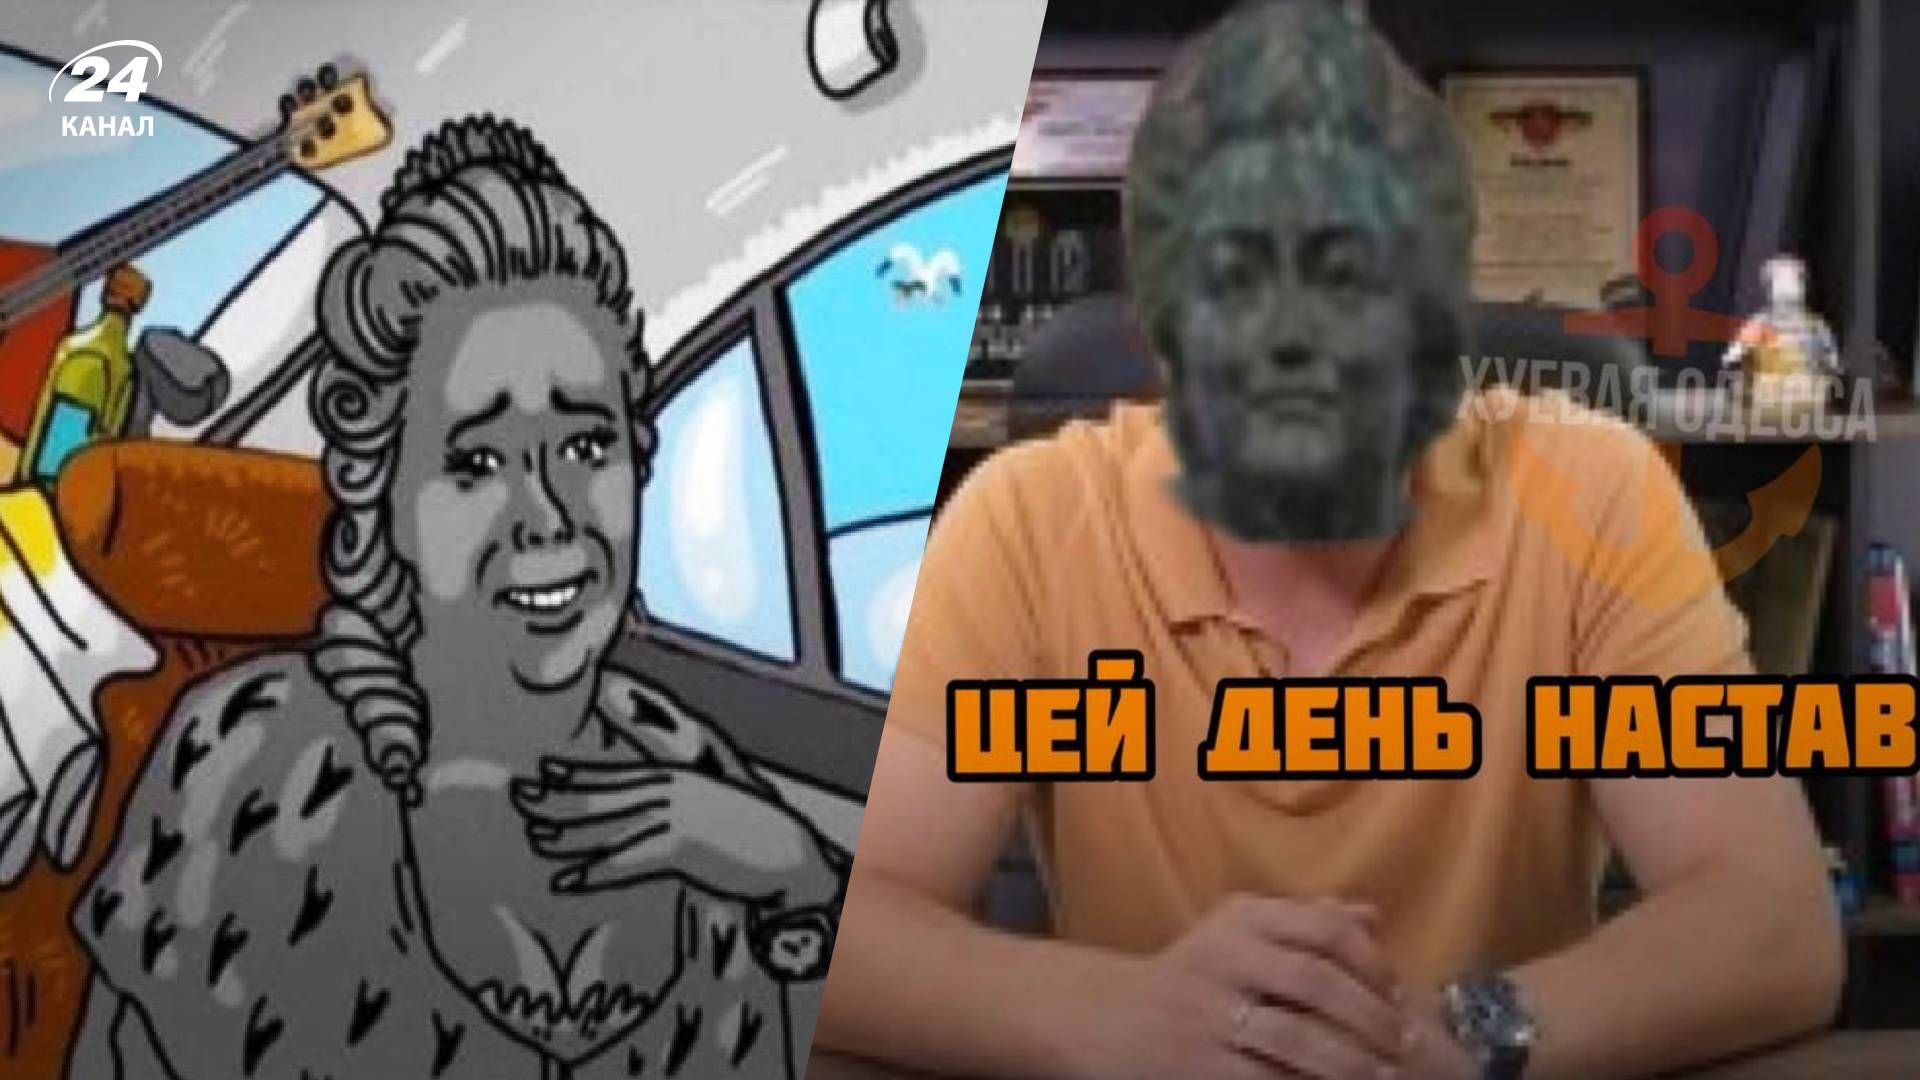 В Одессе снесли памятник Екатерине II - мемы